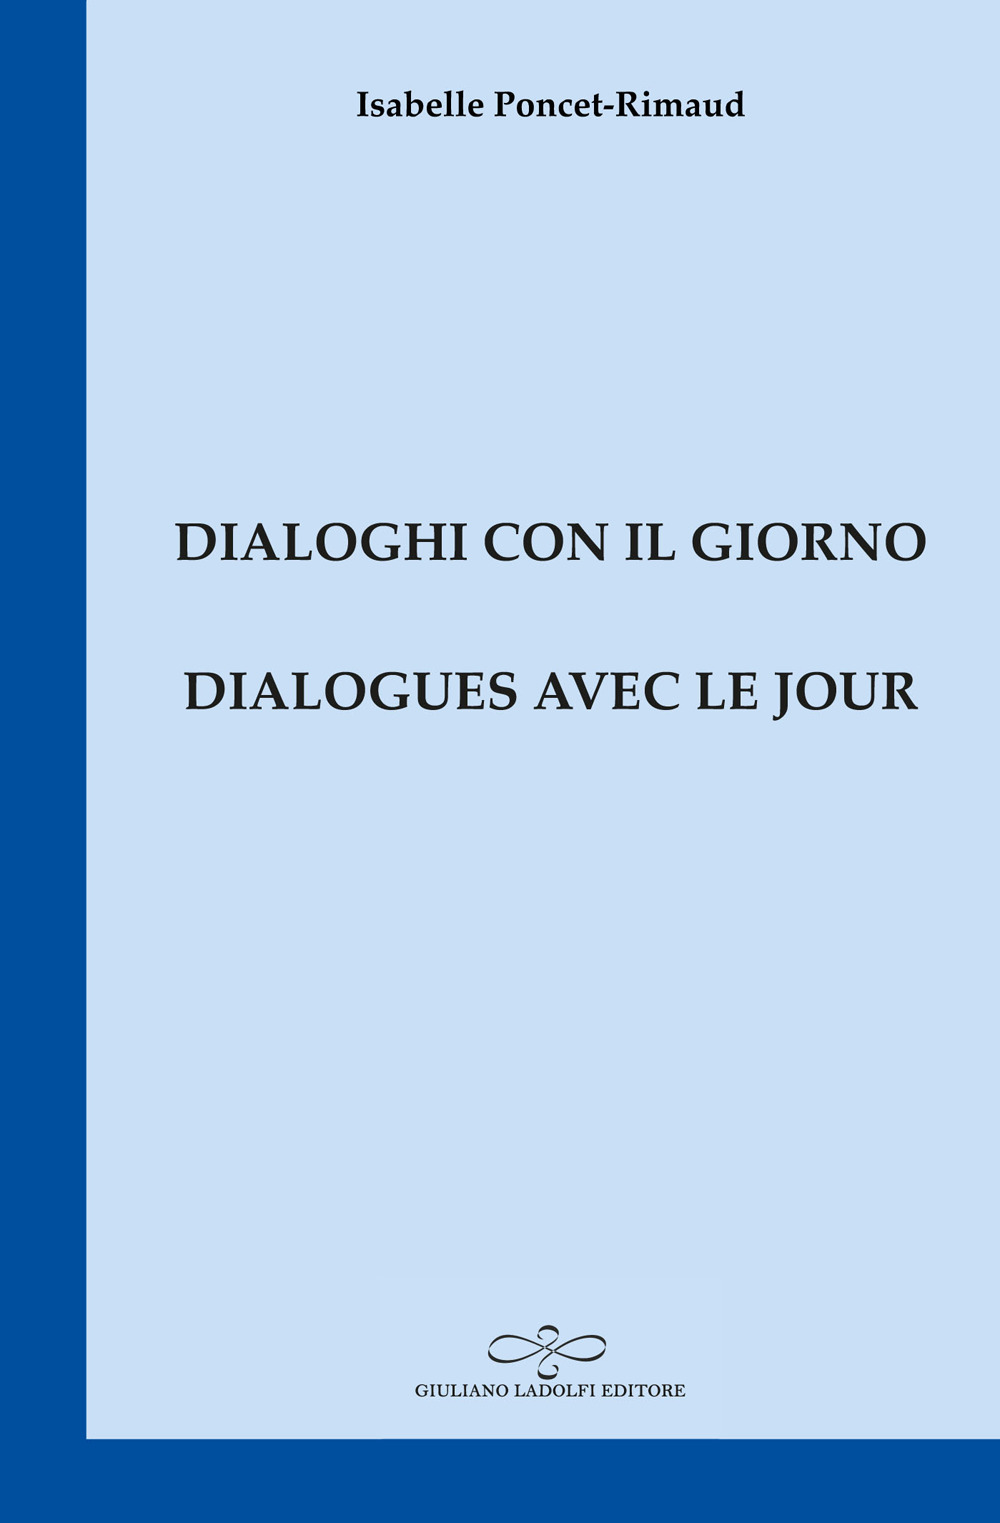 Dialogues avec le jour-Dialoghi con il giorno